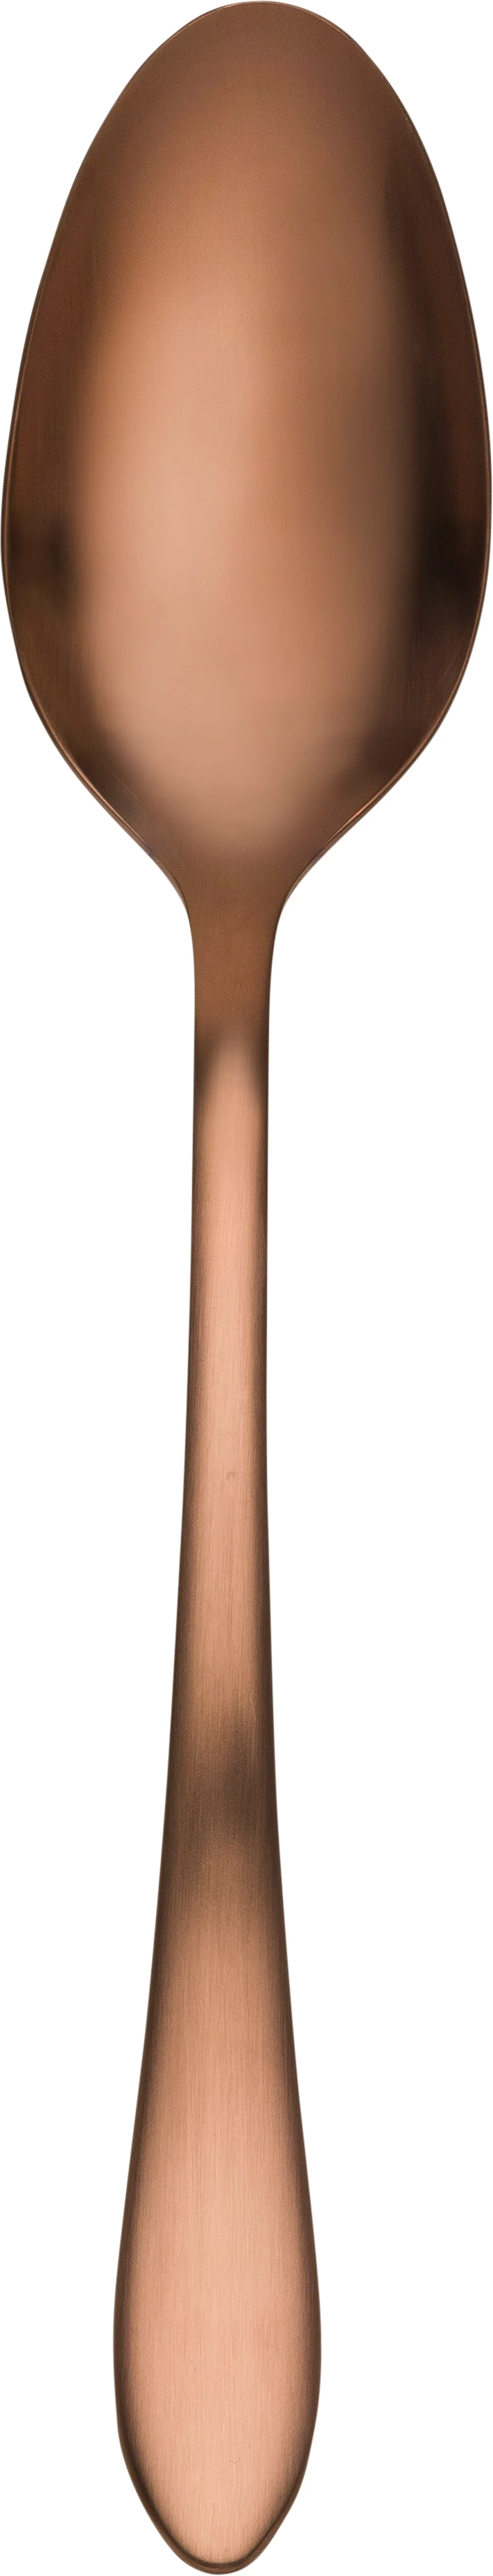 Øland spiseske, rosaguld, 20 cm